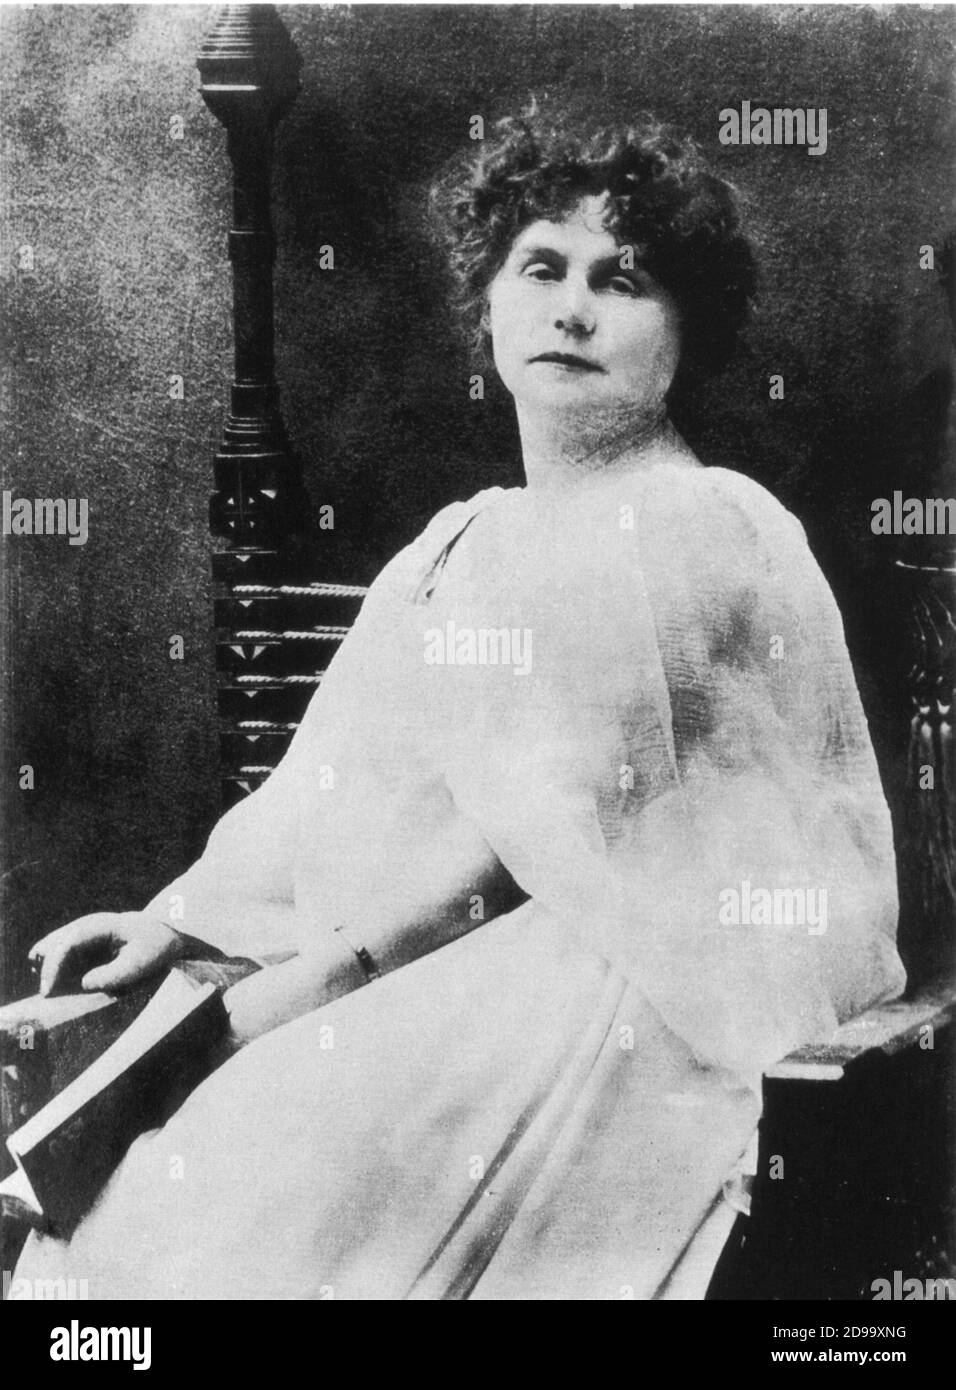 La scrittrice Marie CORELLI ( 1855 - 1924 ) , autrice del romanzo istrionico 'Wormwood : Un dramma di Parigi' sull'Assenzio - ASSENZIO - SCRITTRICE - SCRITTORE - LETTERATURA - LETTERATURA - letterato - ritratto - ritratto - fantasia - triller - polpa fiction - ORRORE - ORRORE - libro - libro - libro - sedia - sedia - GOTICO - vestito bianco - vestito bianco ---- Archivio GBB Foto Stock